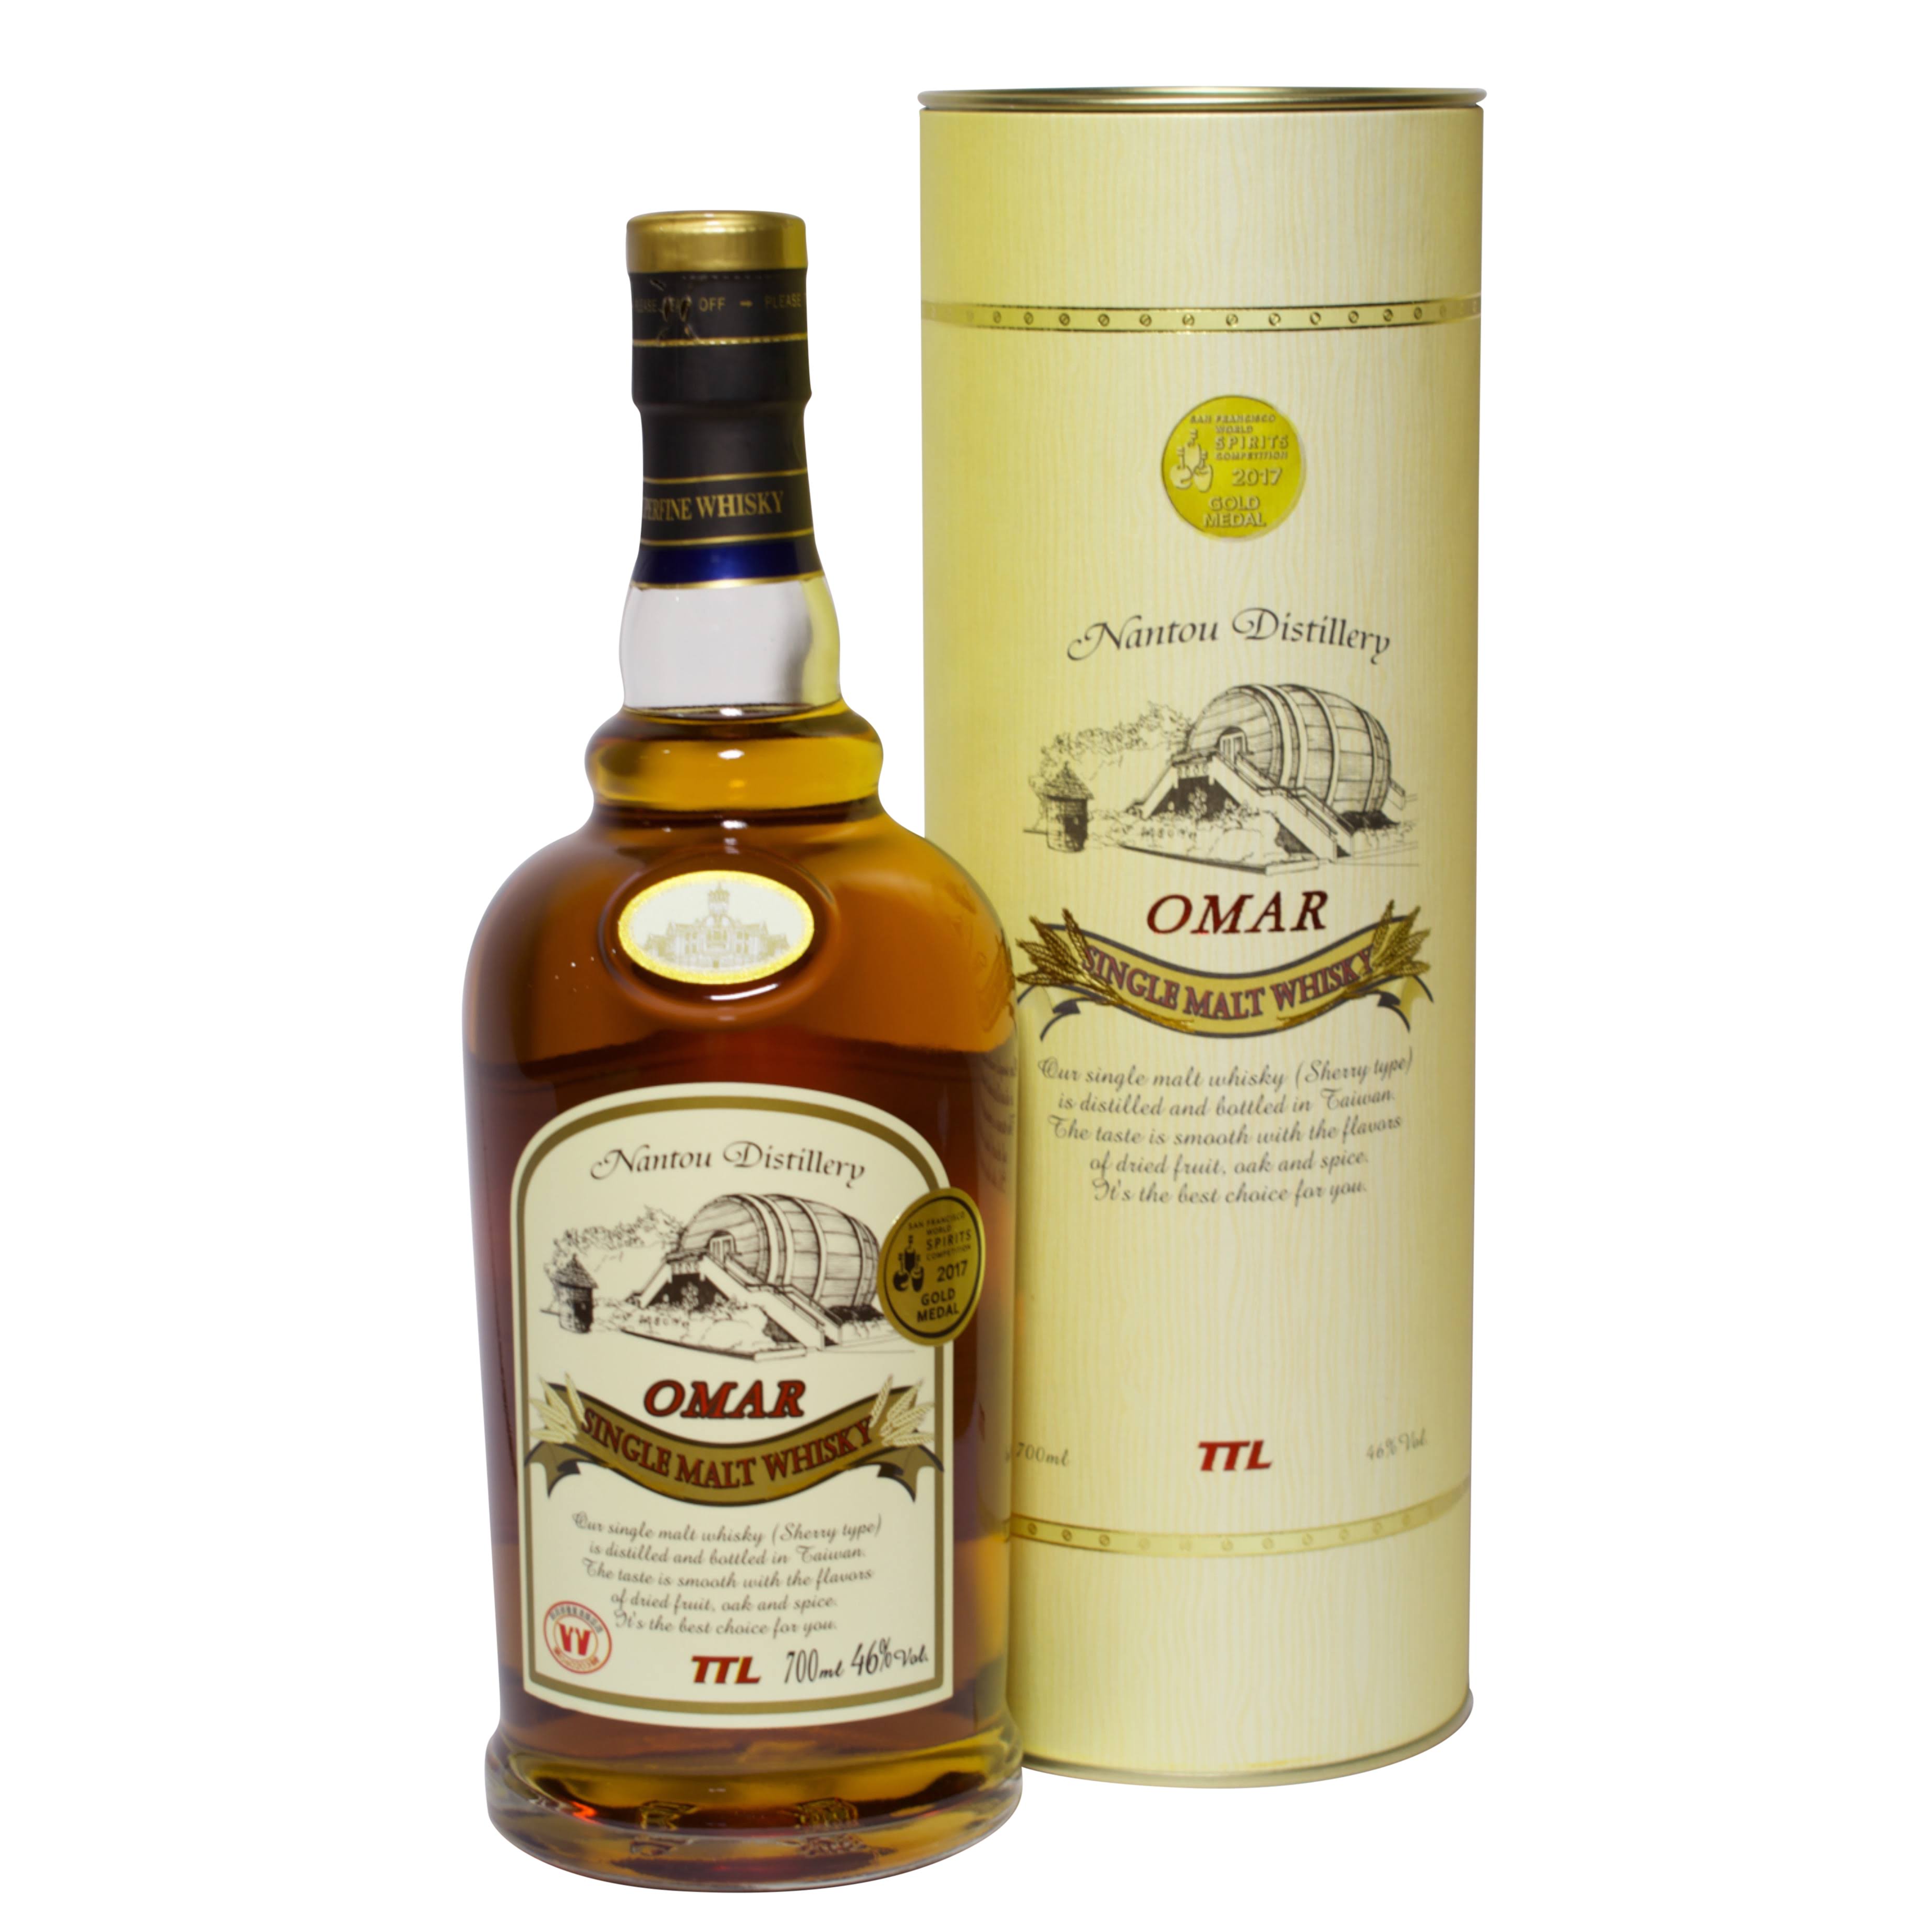 Omar Single Malt Whisky - Sherry Cask Single Malt Whisky